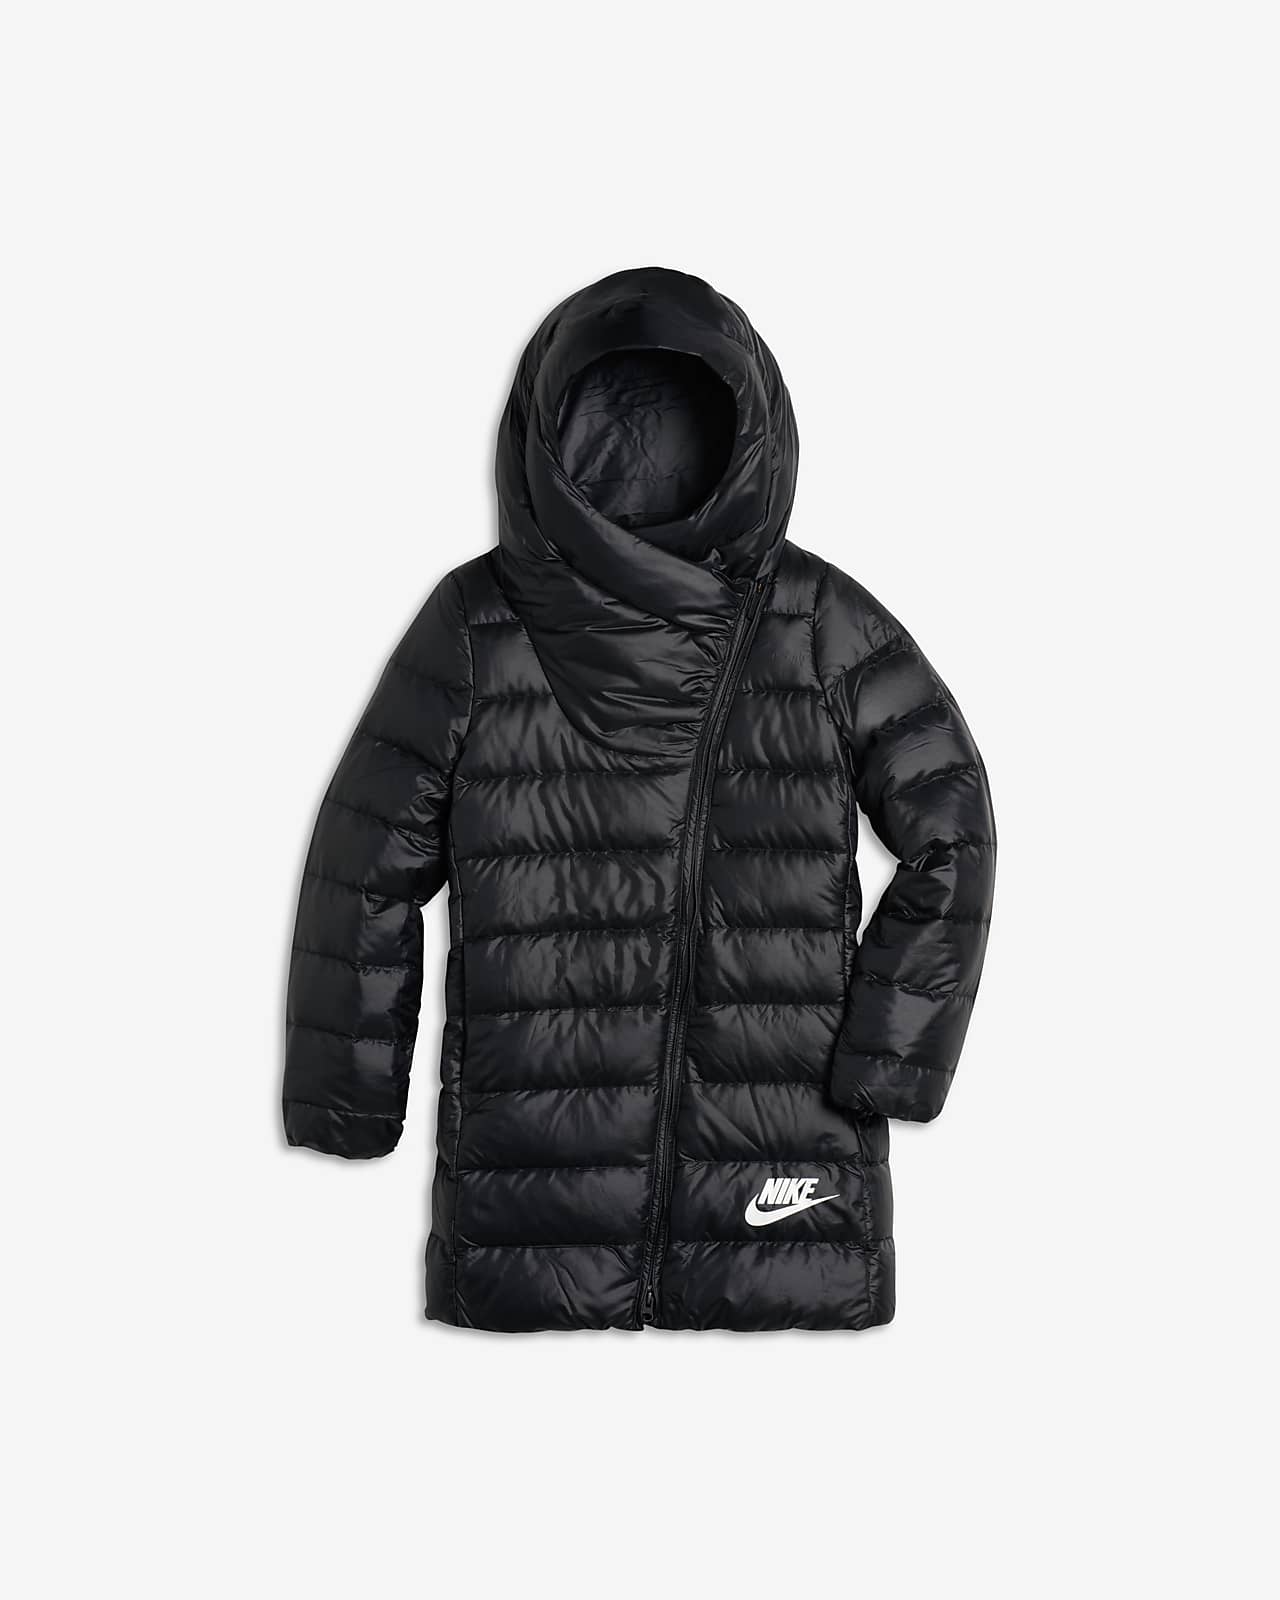 Nike Winter Jacket Black | vlr.eng.br